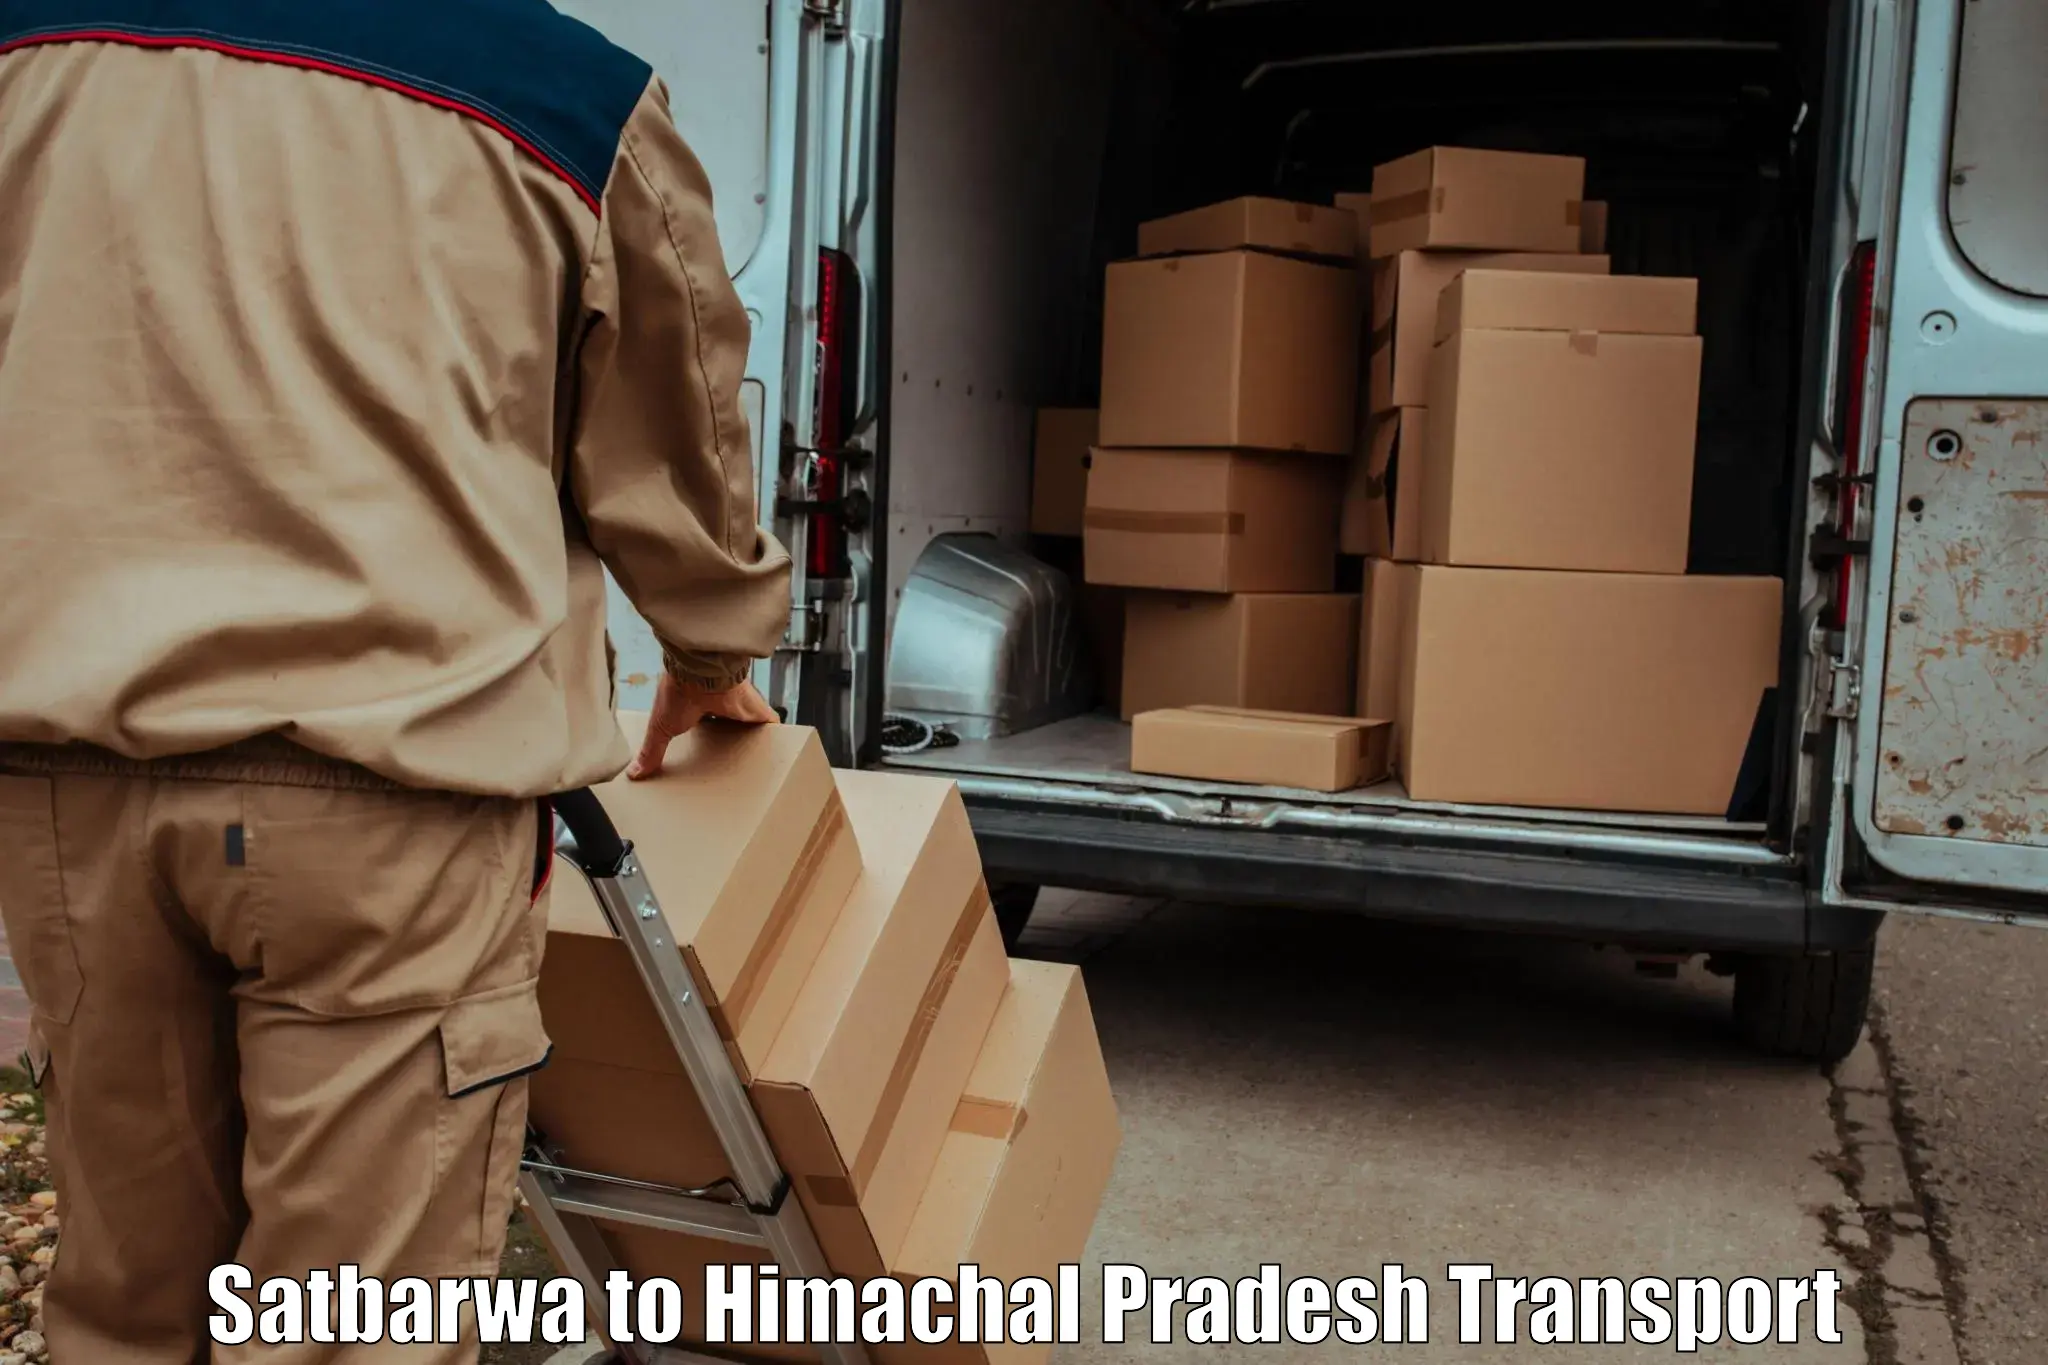 Truck transport companies in India Satbarwa to Jubbal